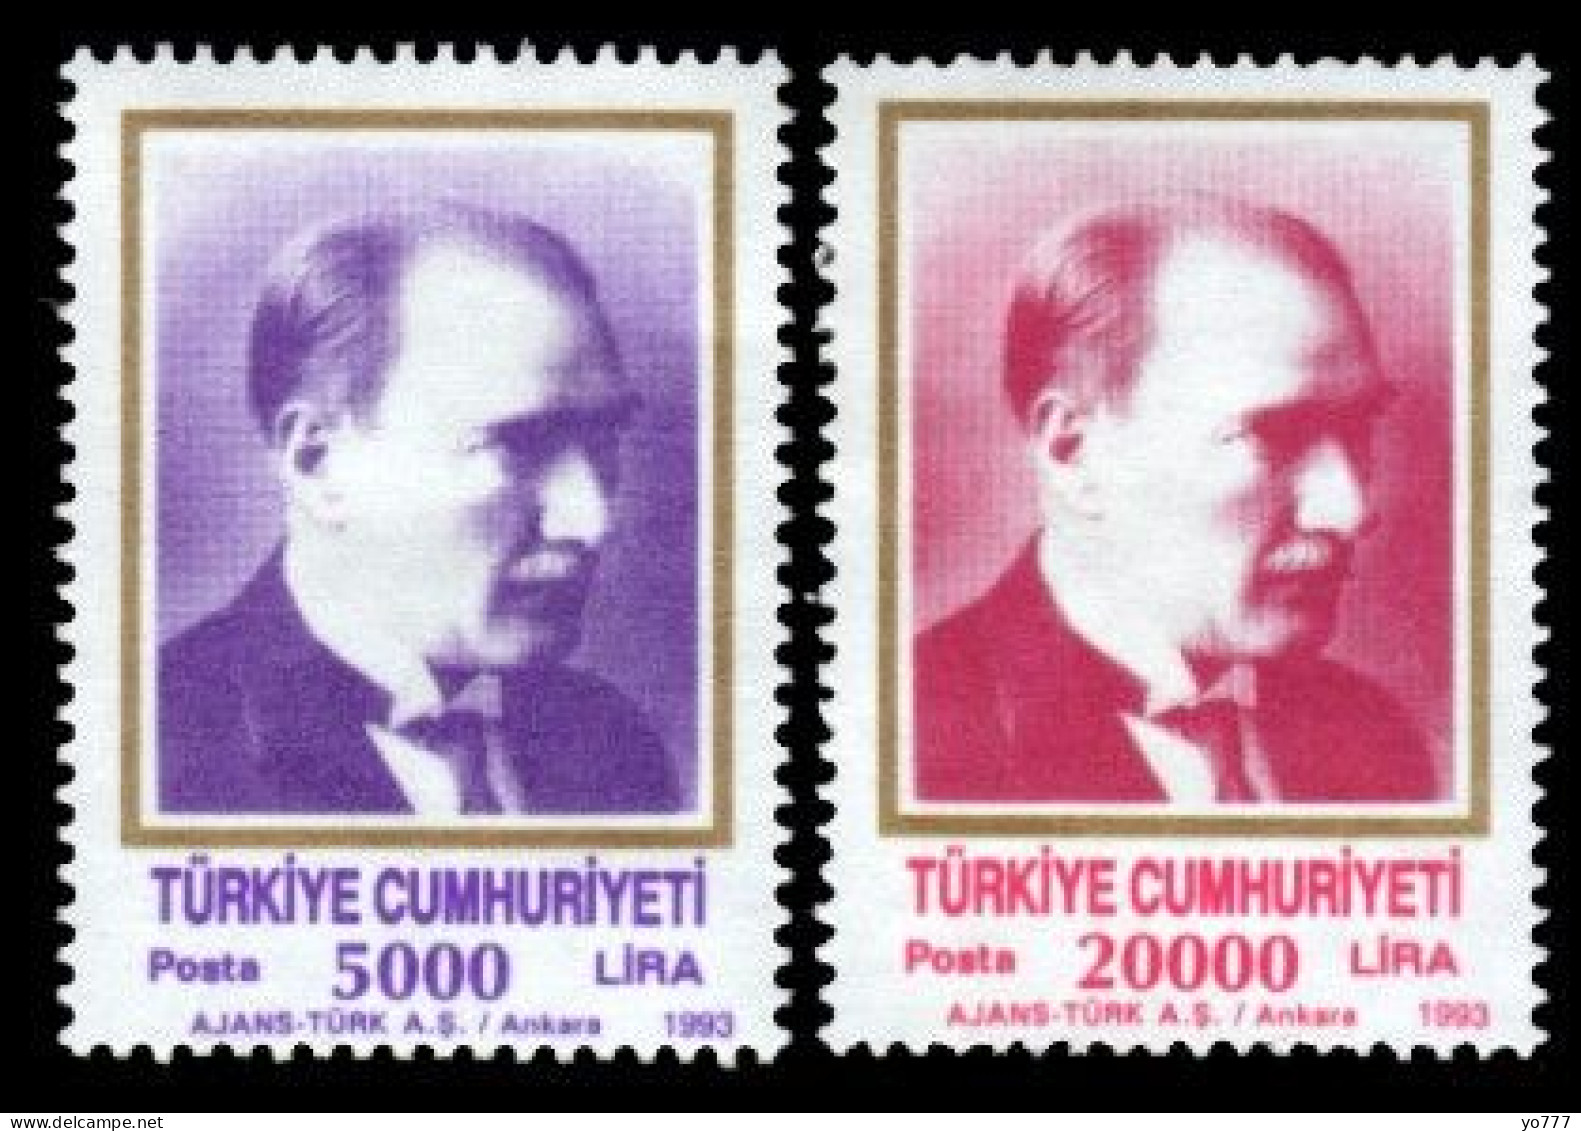 (3000-01) TURKEY REGULAR ISSUE STAMPS MNH** - Ungebraucht